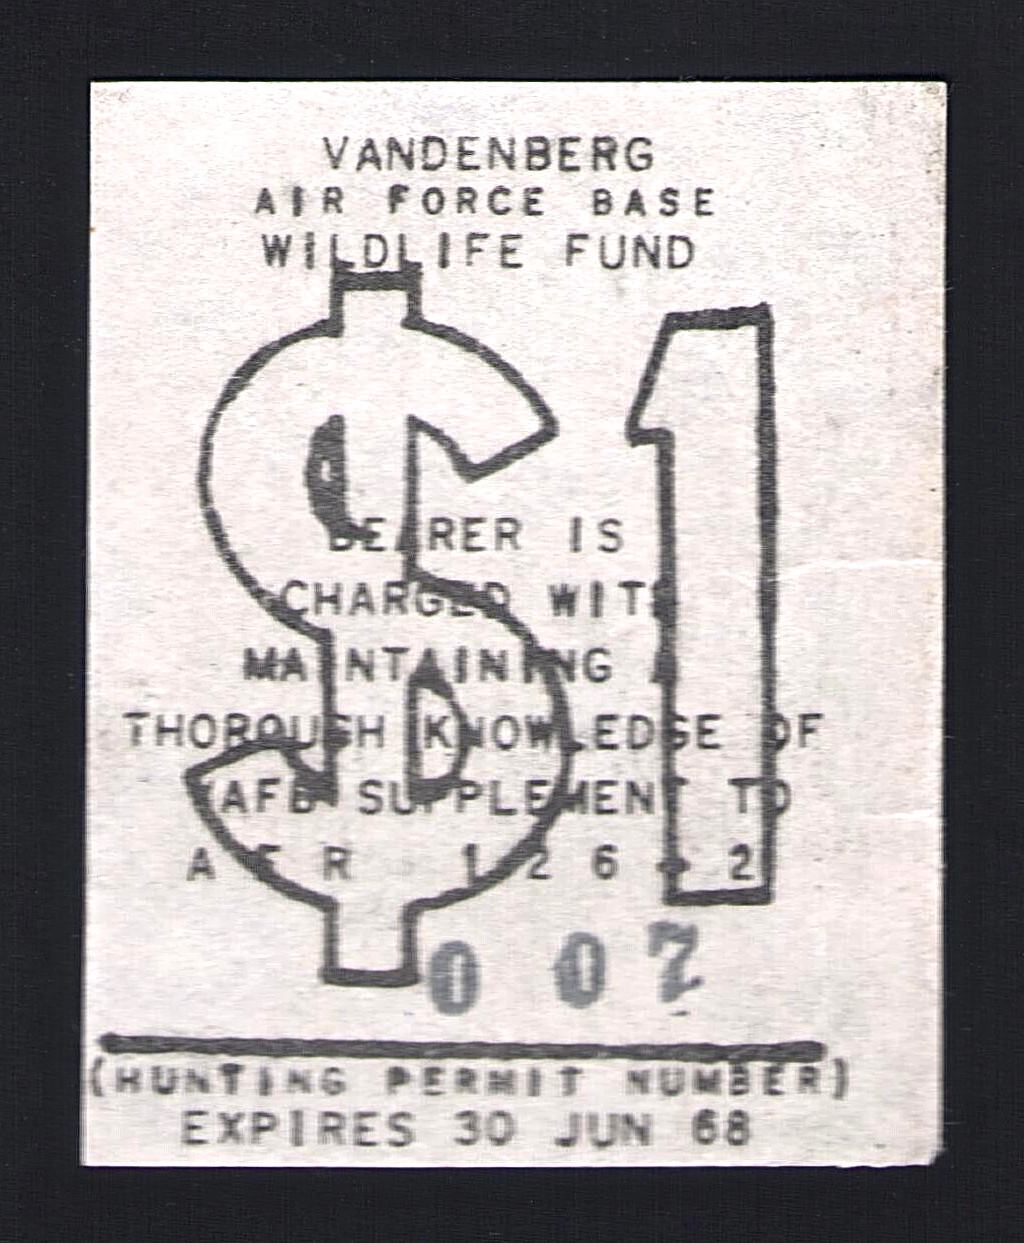 1967-68 VAFB Hunting